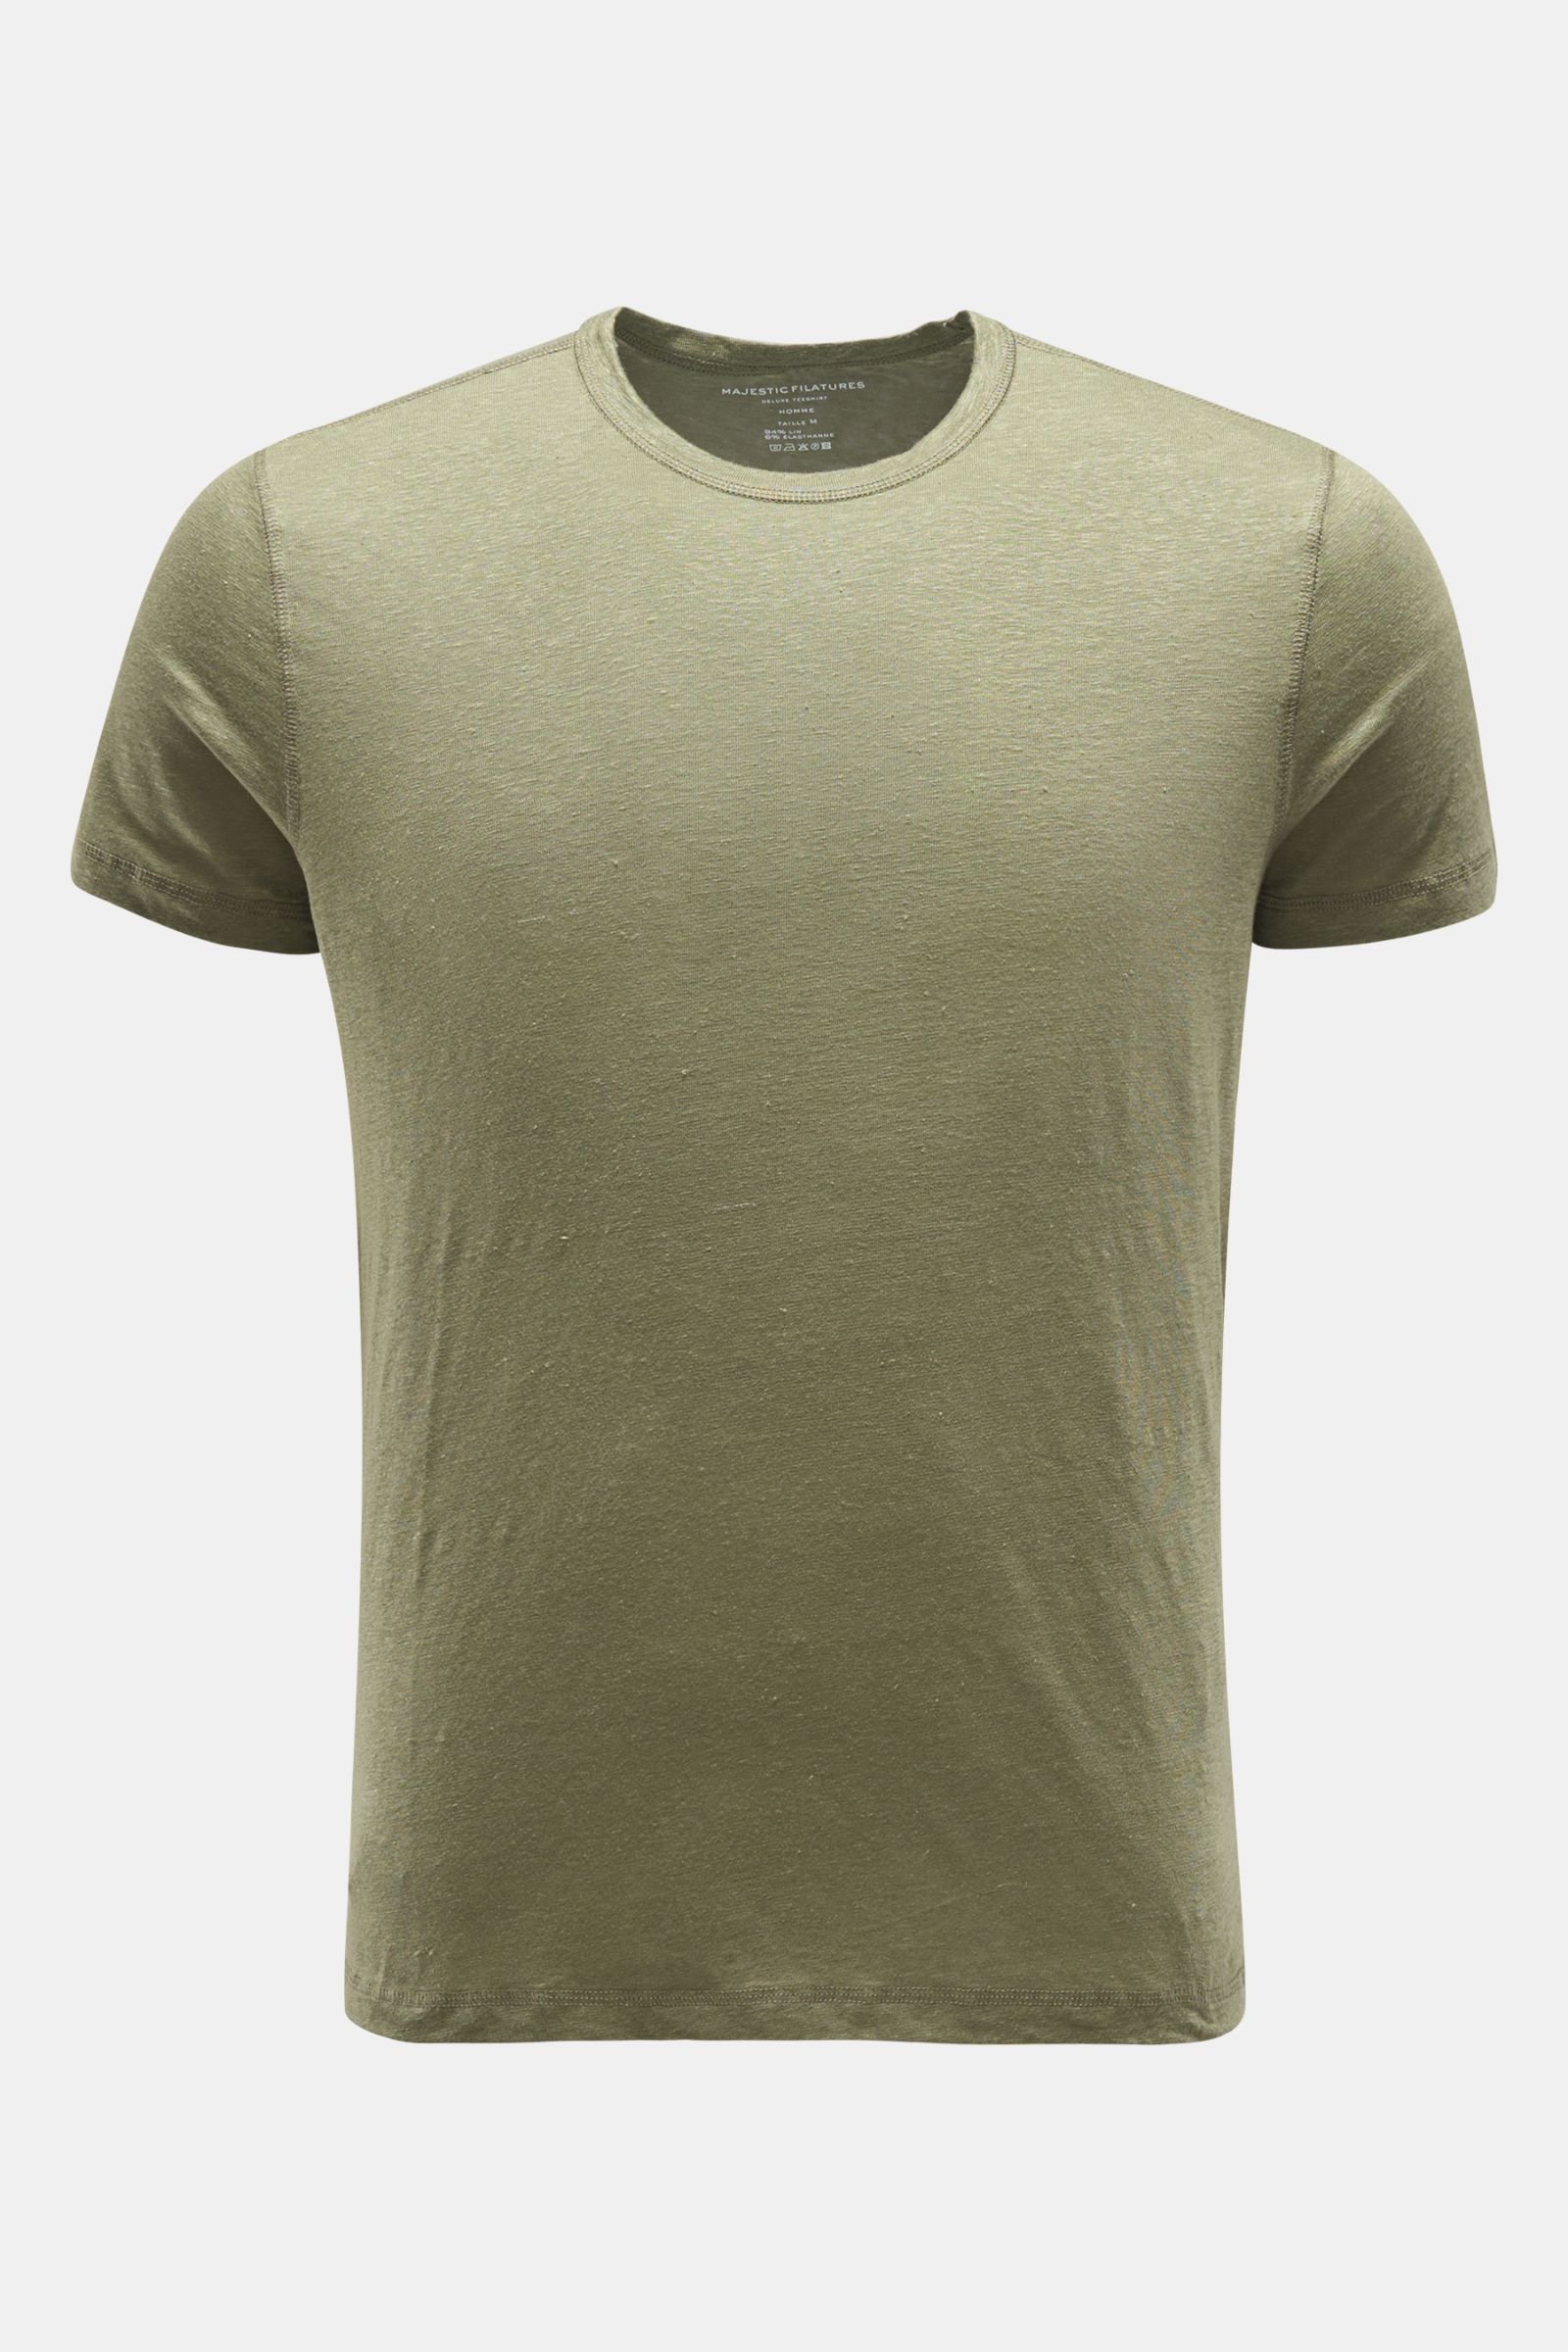 Linen crew neck T-shirt grey-green